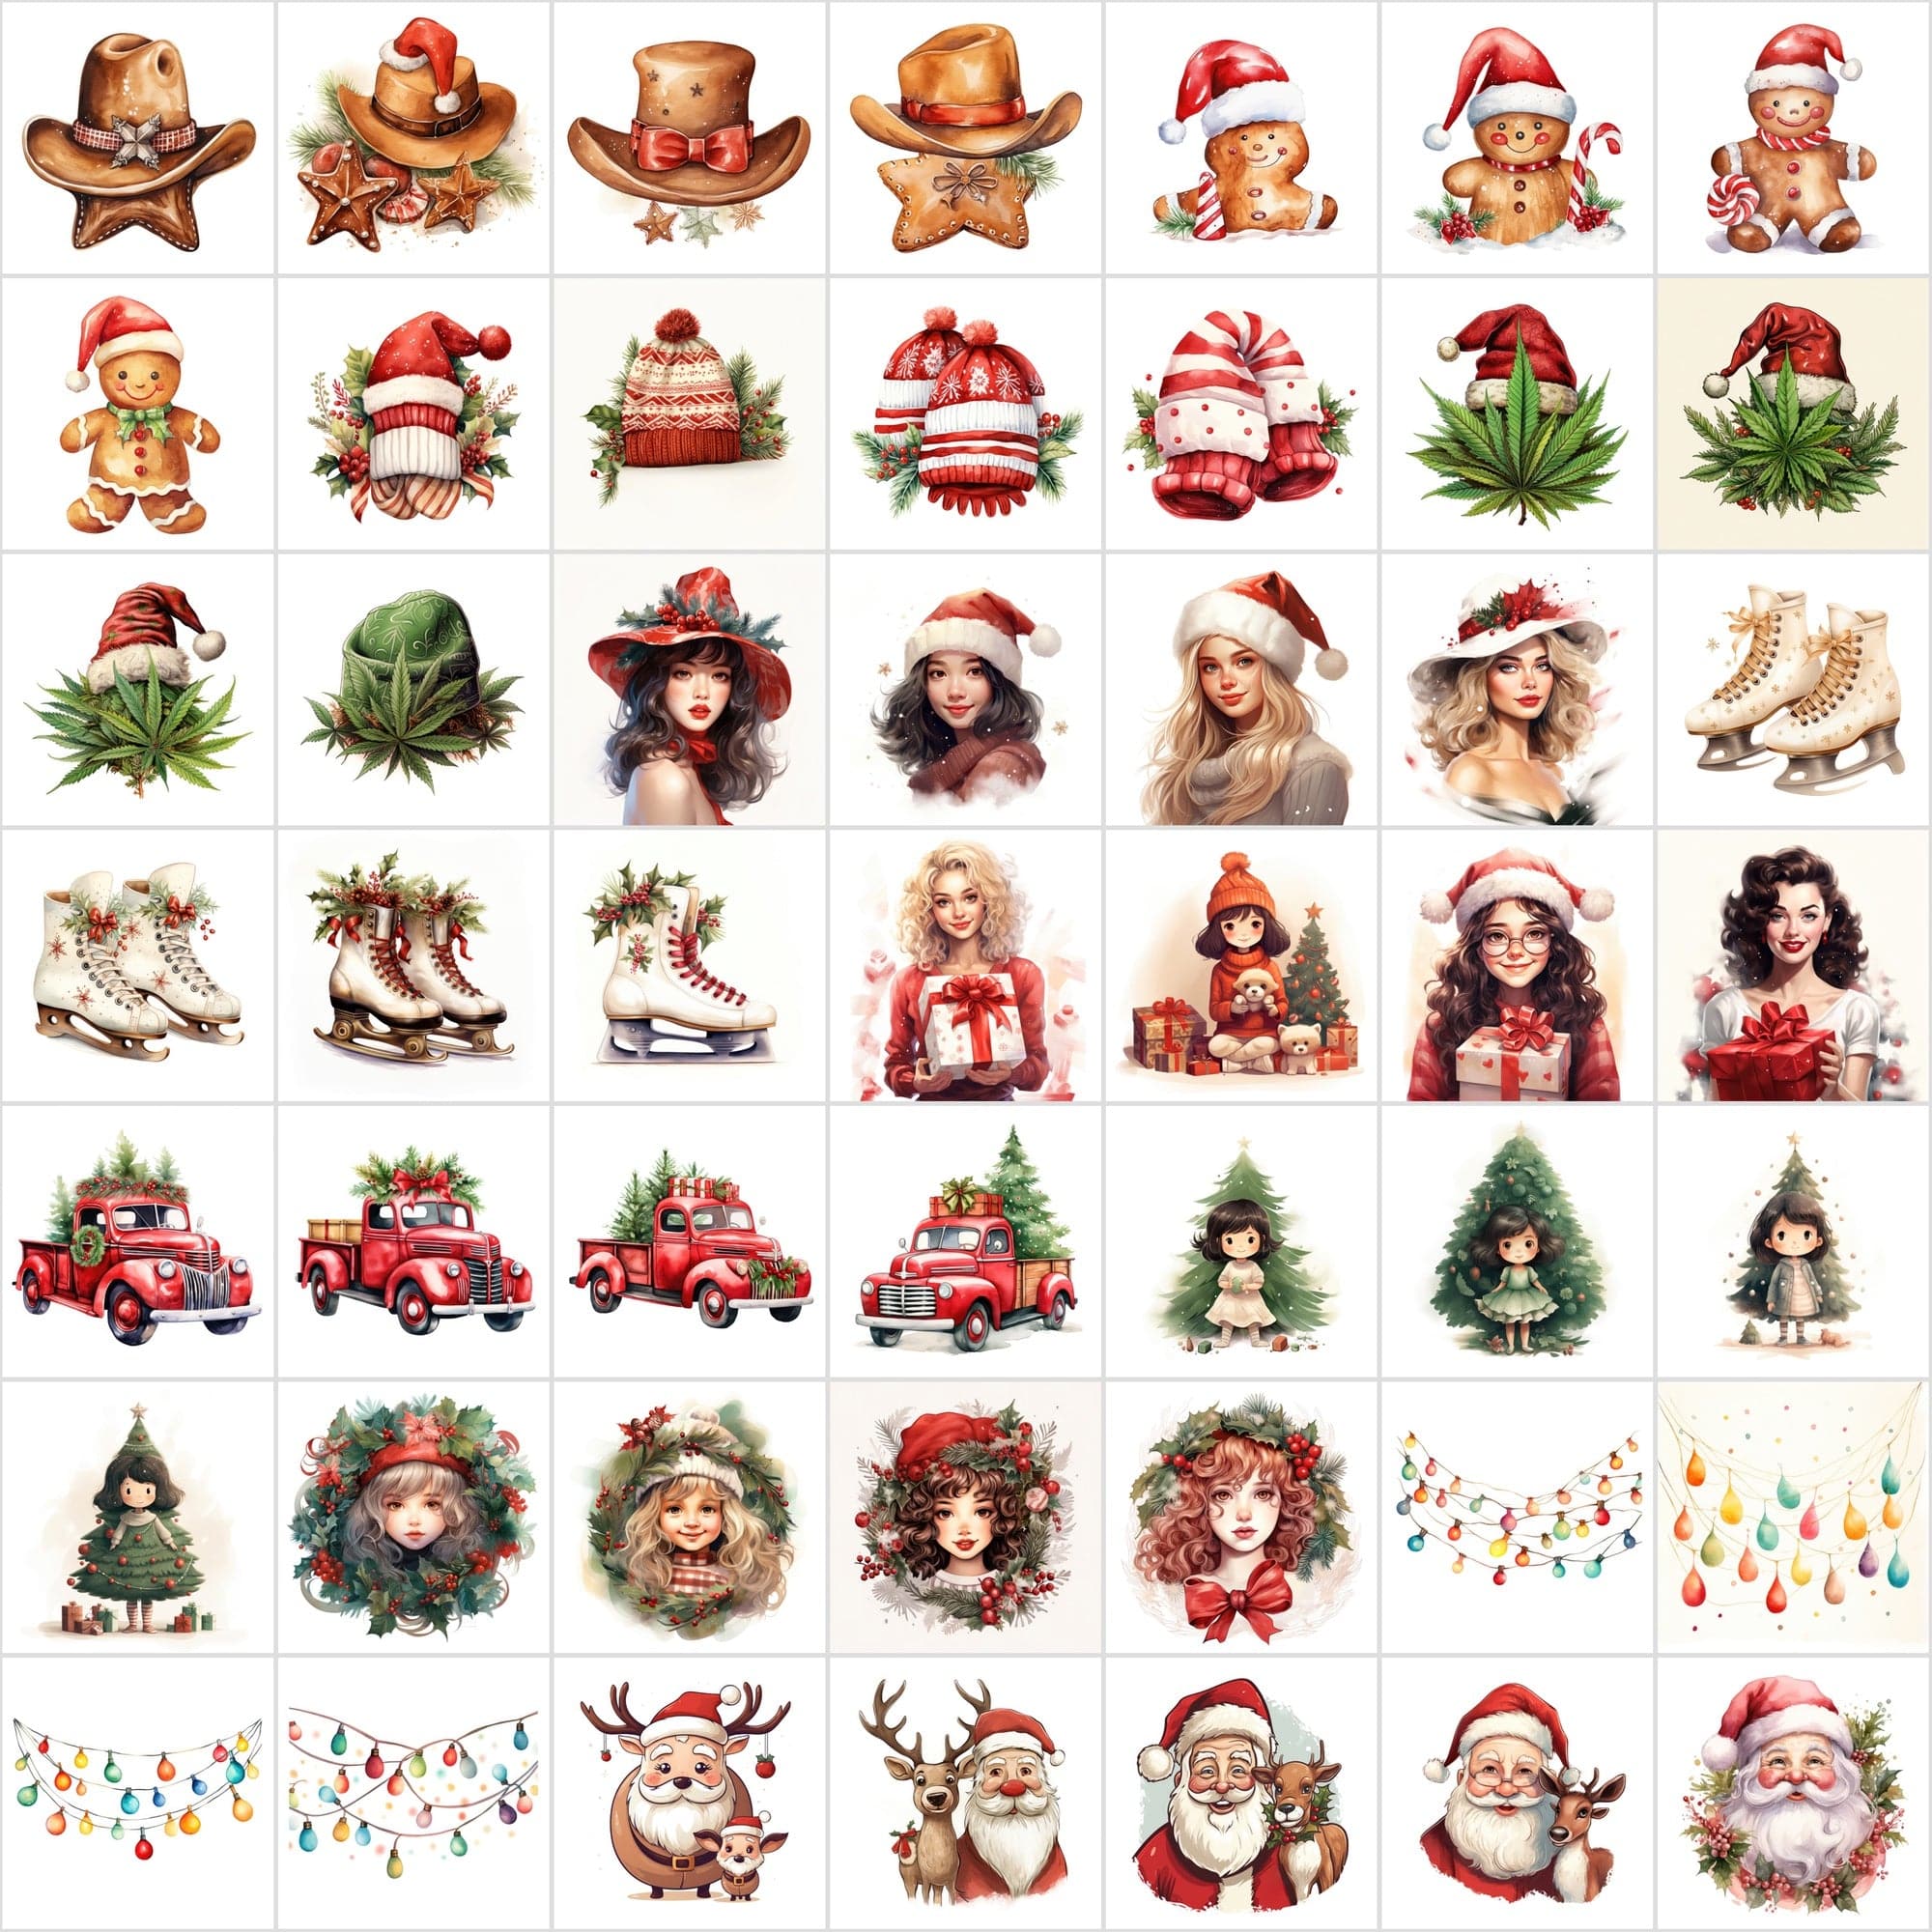 Mega Bundle: 700 High-Quality Christmas Illustrations, Commercial Use, Instant Download Digital Download Sumobundle